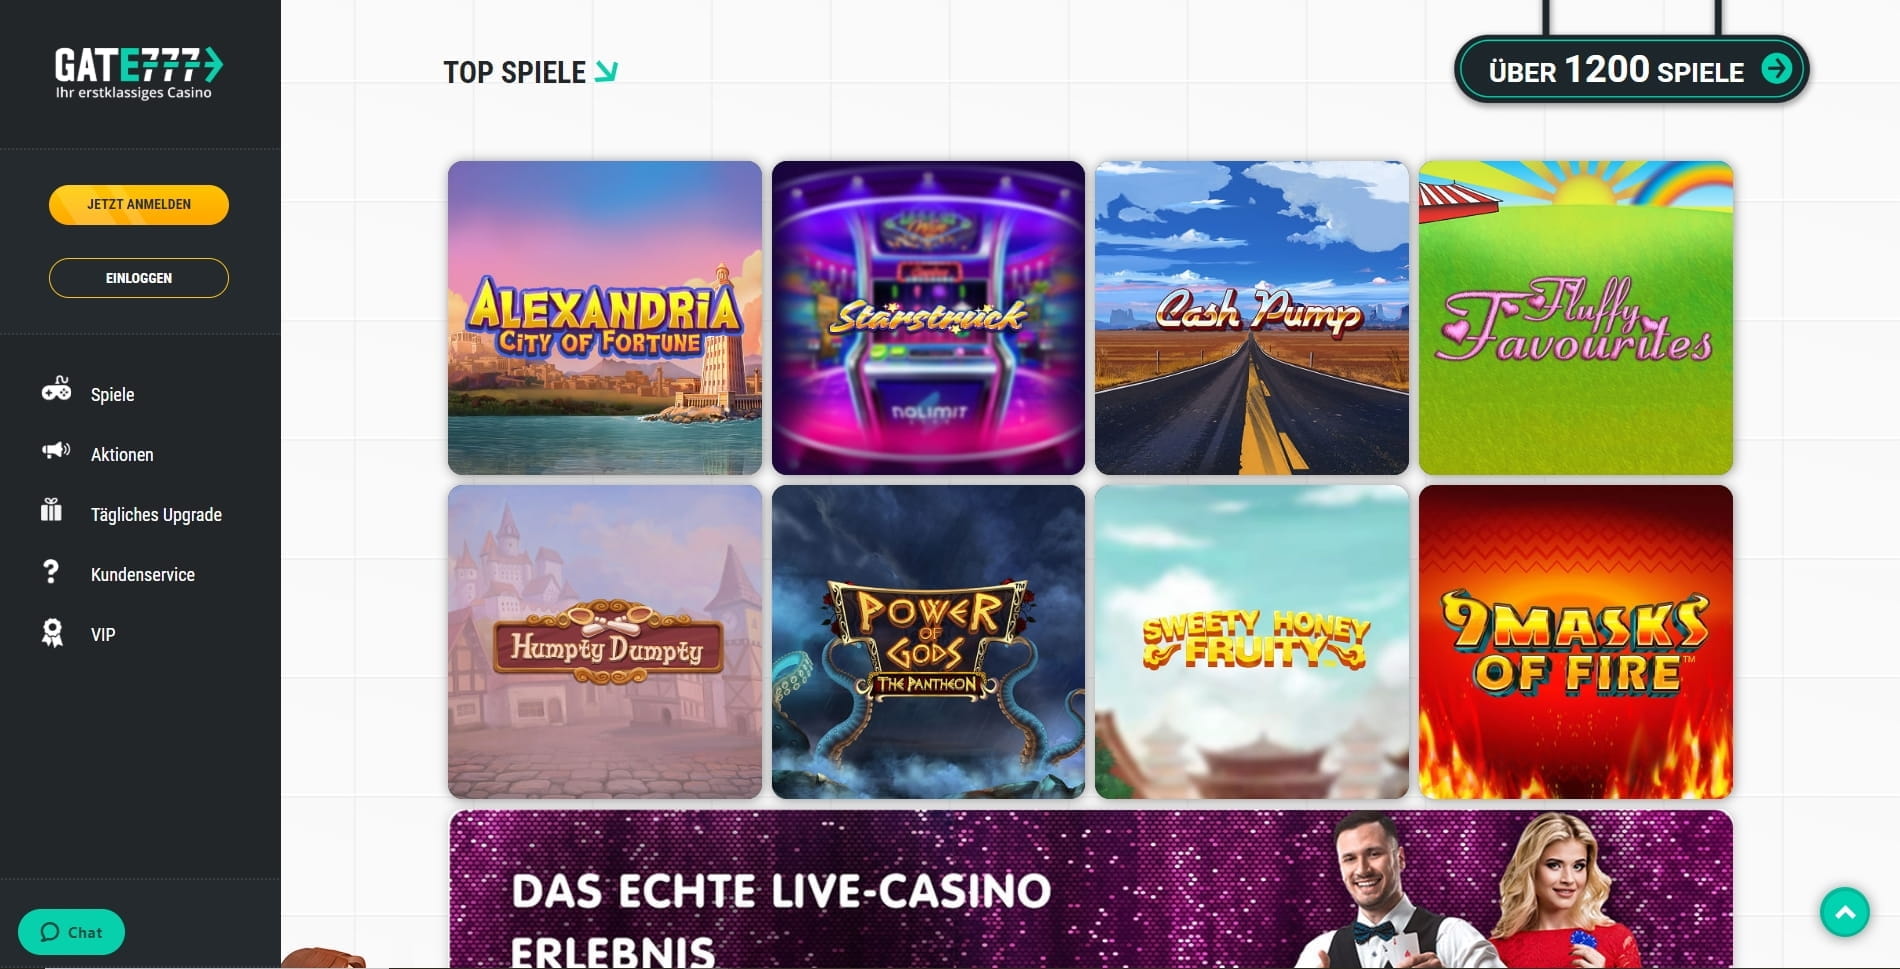 casinos online dinheiro de verdade